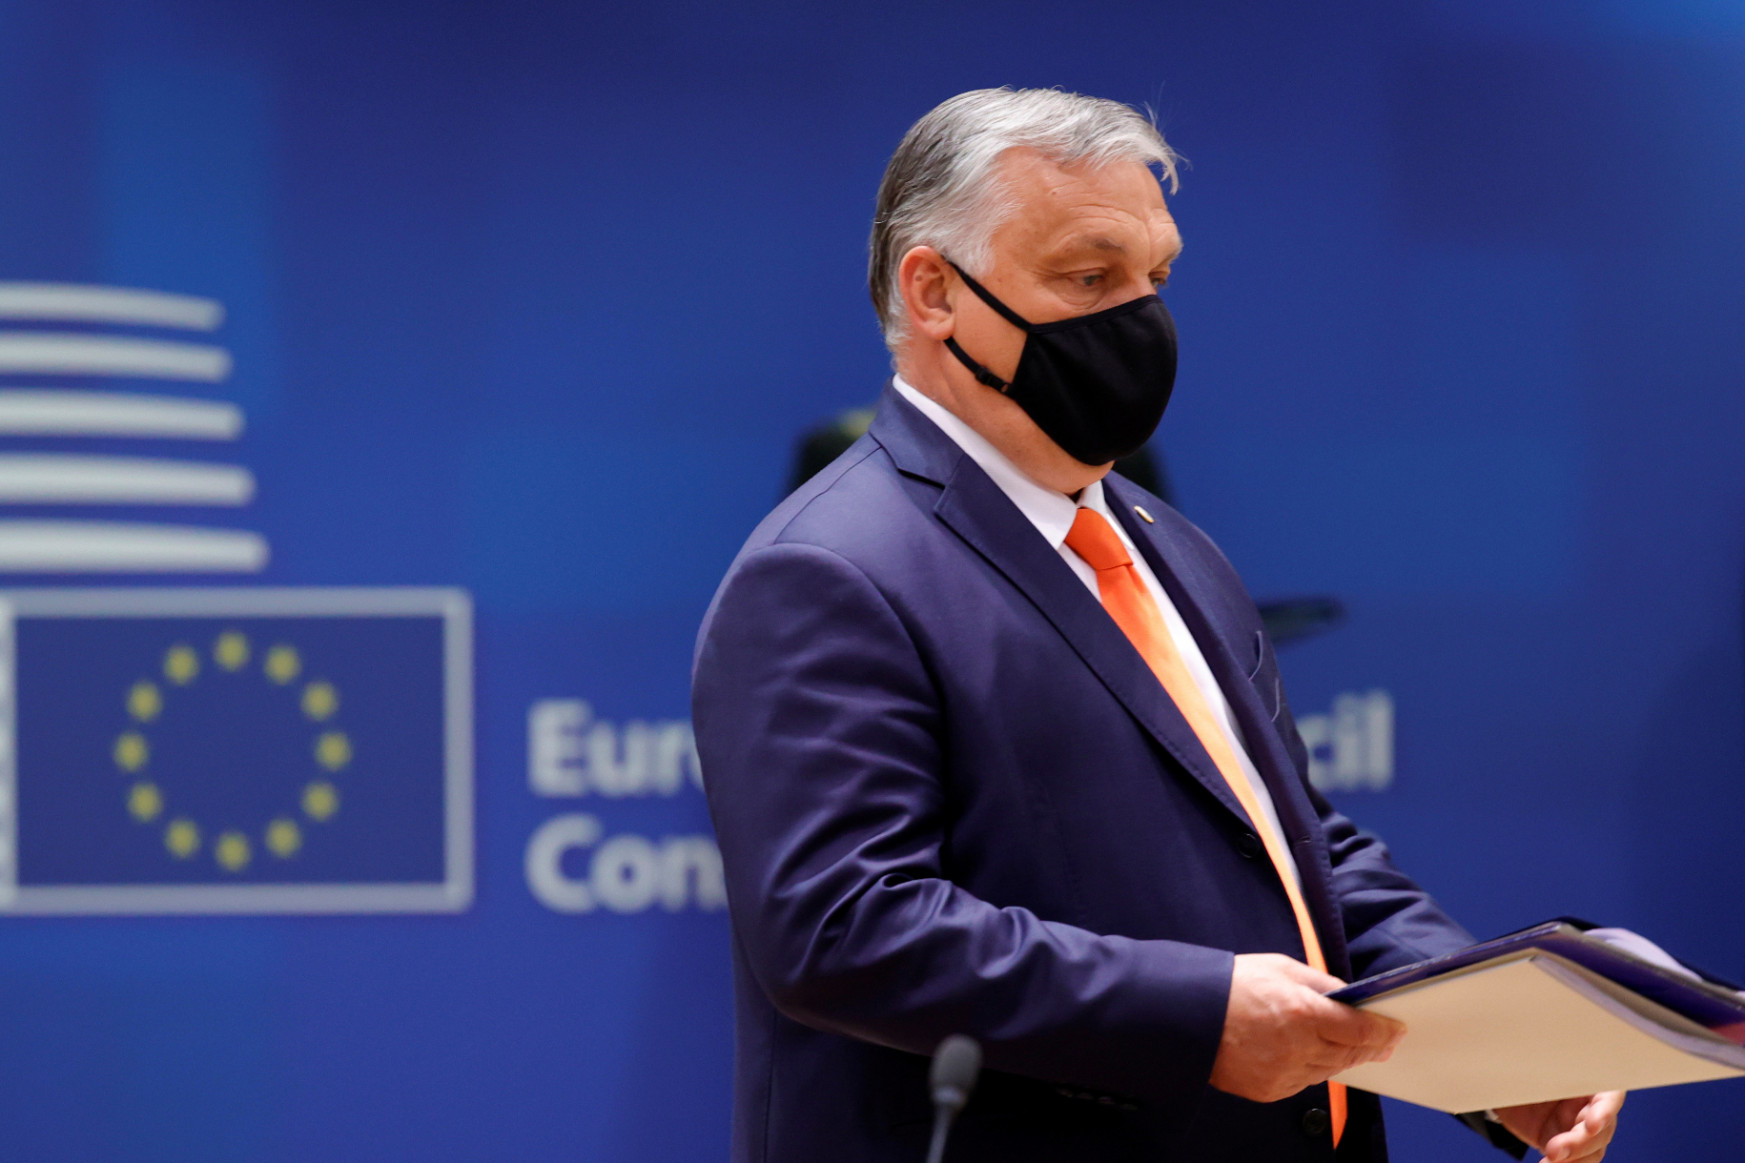 „Távozni is lehet az EU-ból” – többen ezt is jelezték Orbánnak a melegellenes törvény miatt az Európai Tanácsban